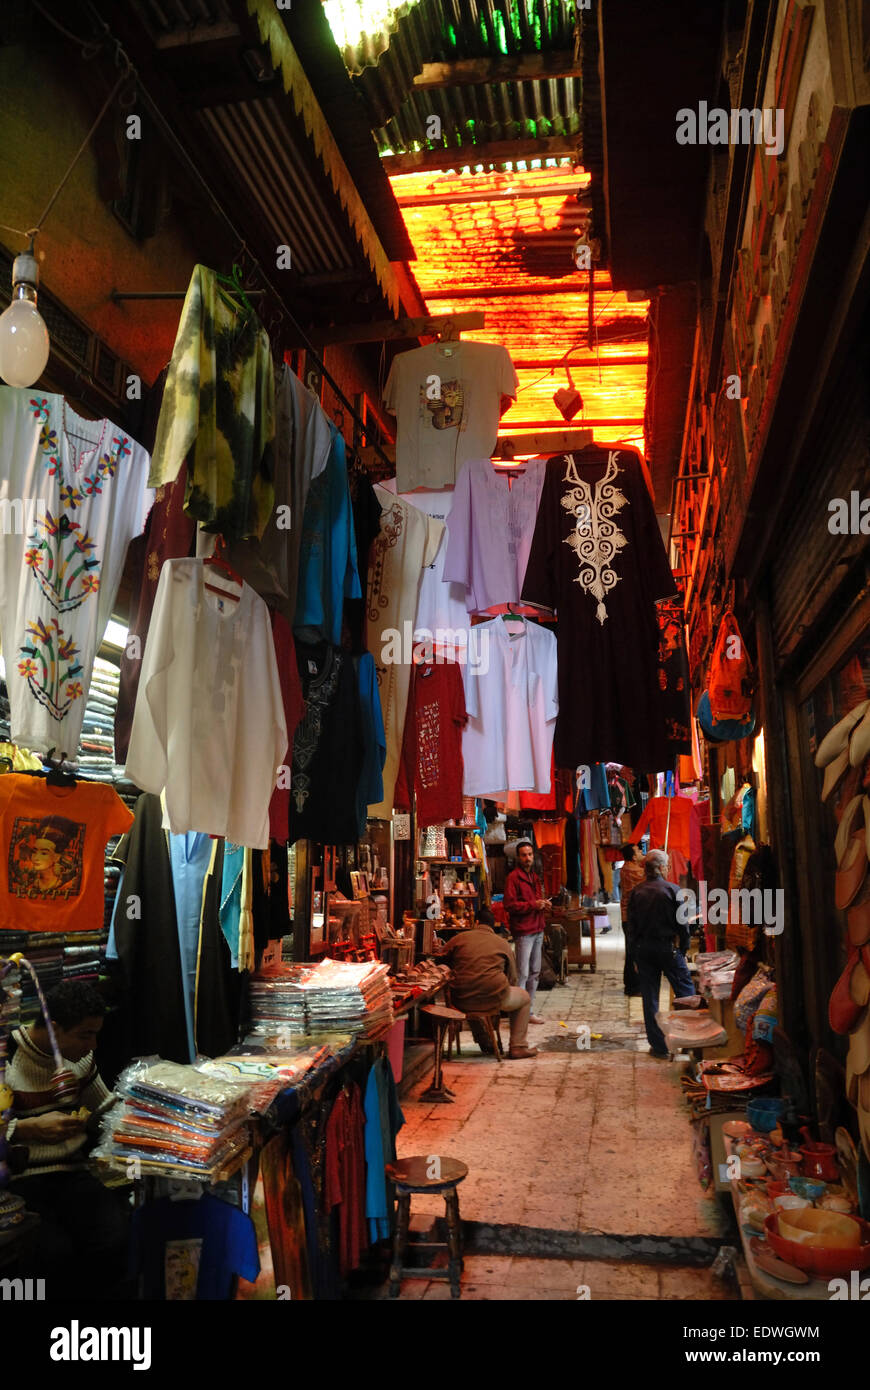 Khan El Khalili Bazaar, Cairo, Egypt Stock Photo